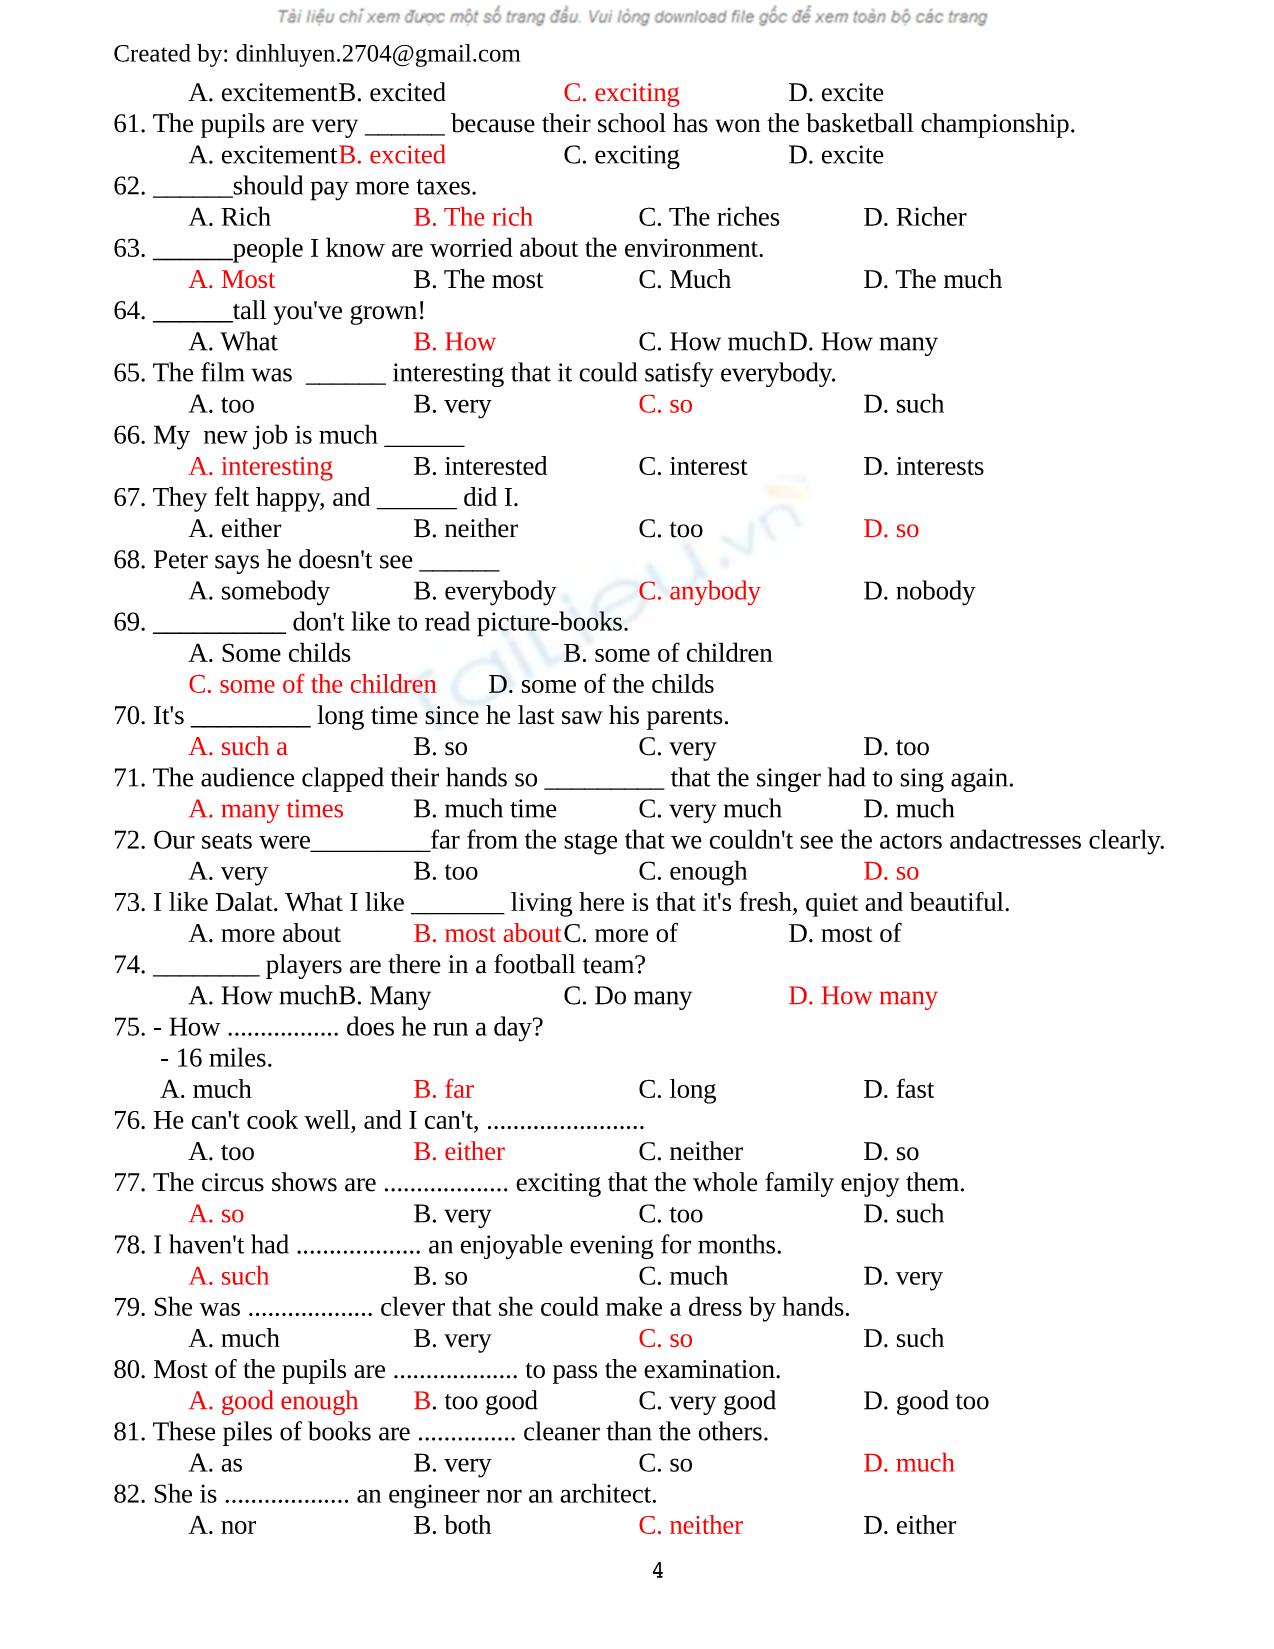 Bài tập trắng nghiệm môn tiếng Anh (Có đáp án) trang 4